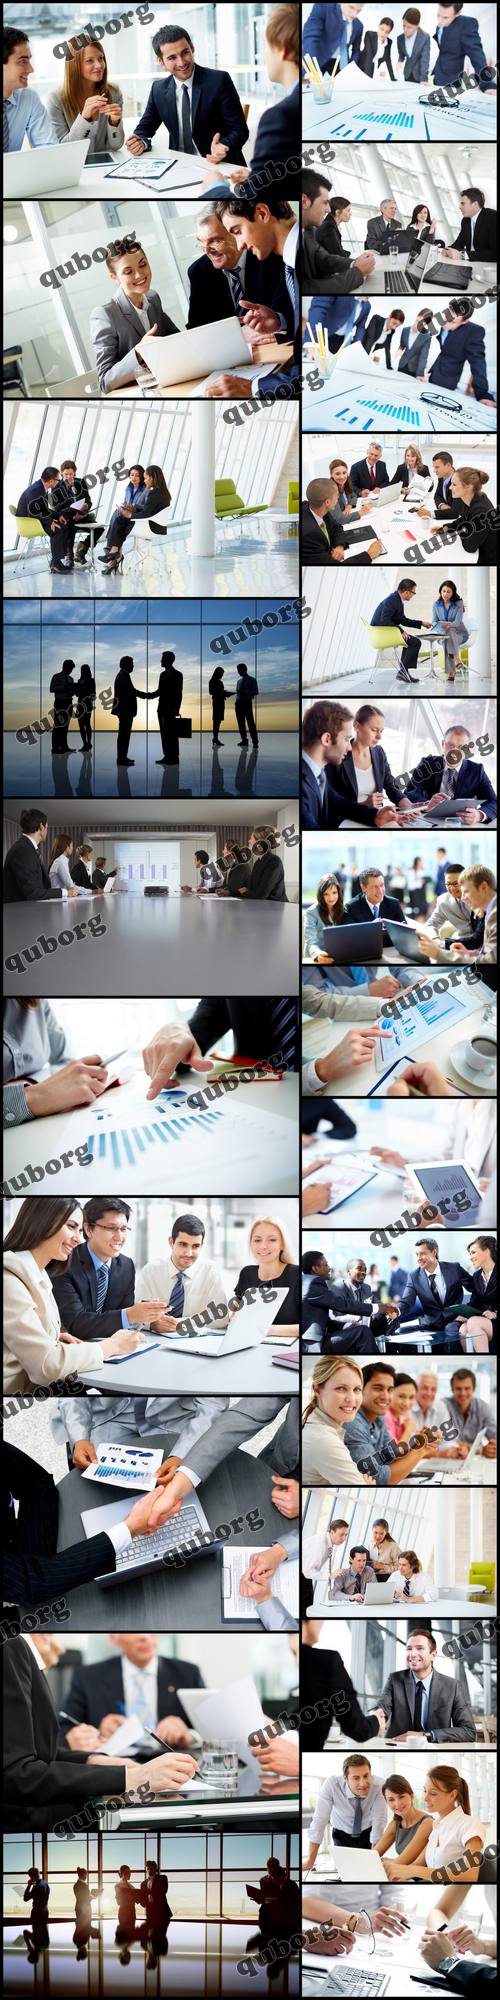 Stock Photos - Business Meeting